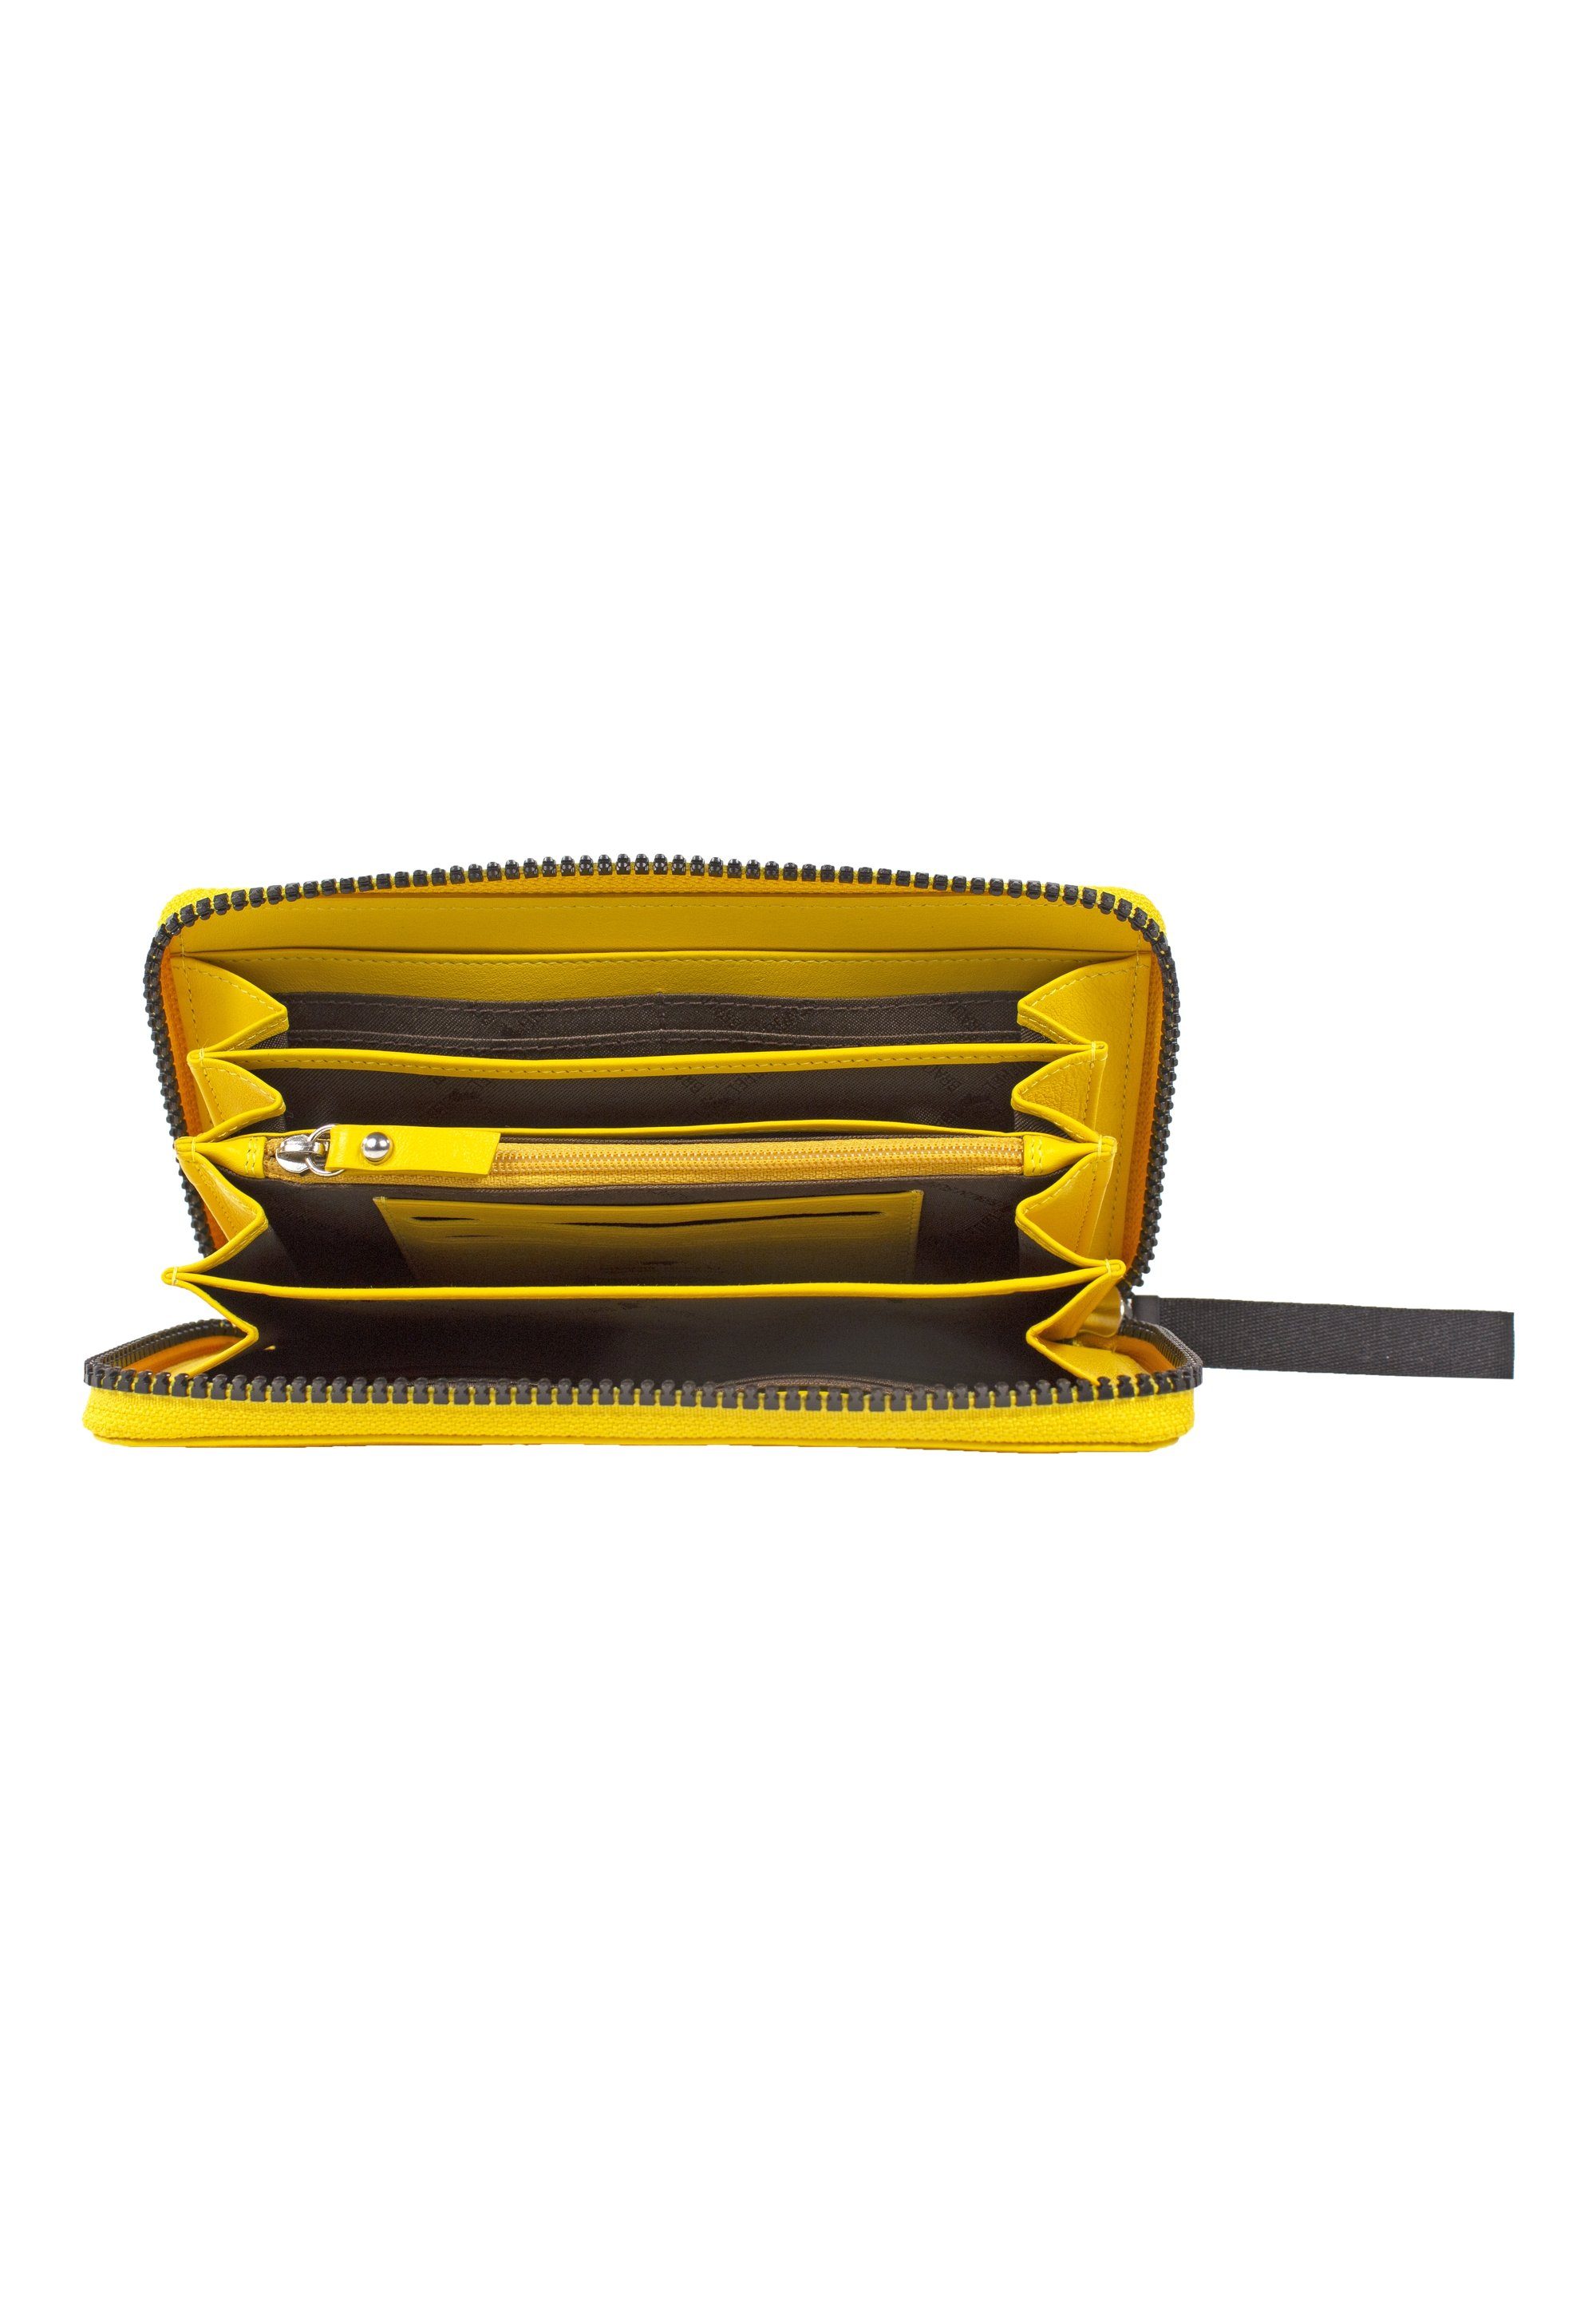 CAPRI Braun mit gelb Geldbörse Kartenfächern Büffel L, 18